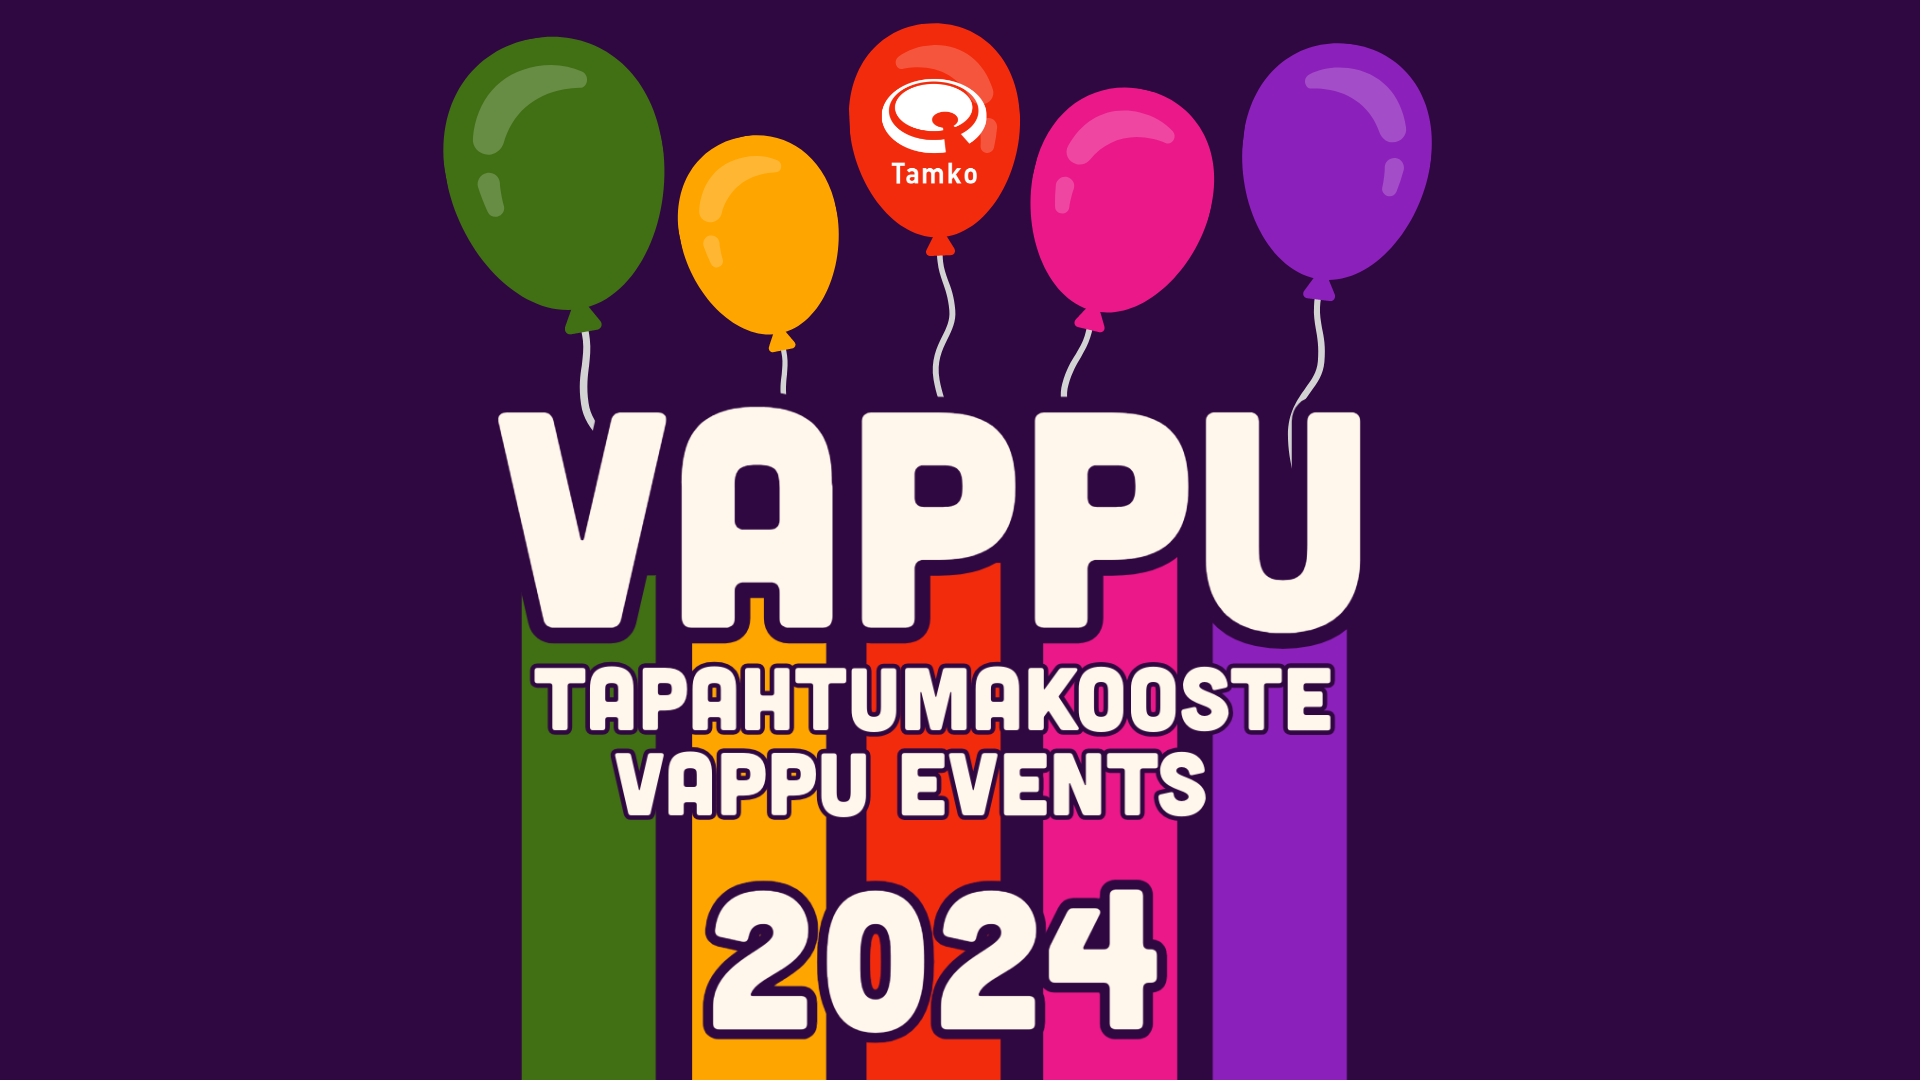 Vappu events